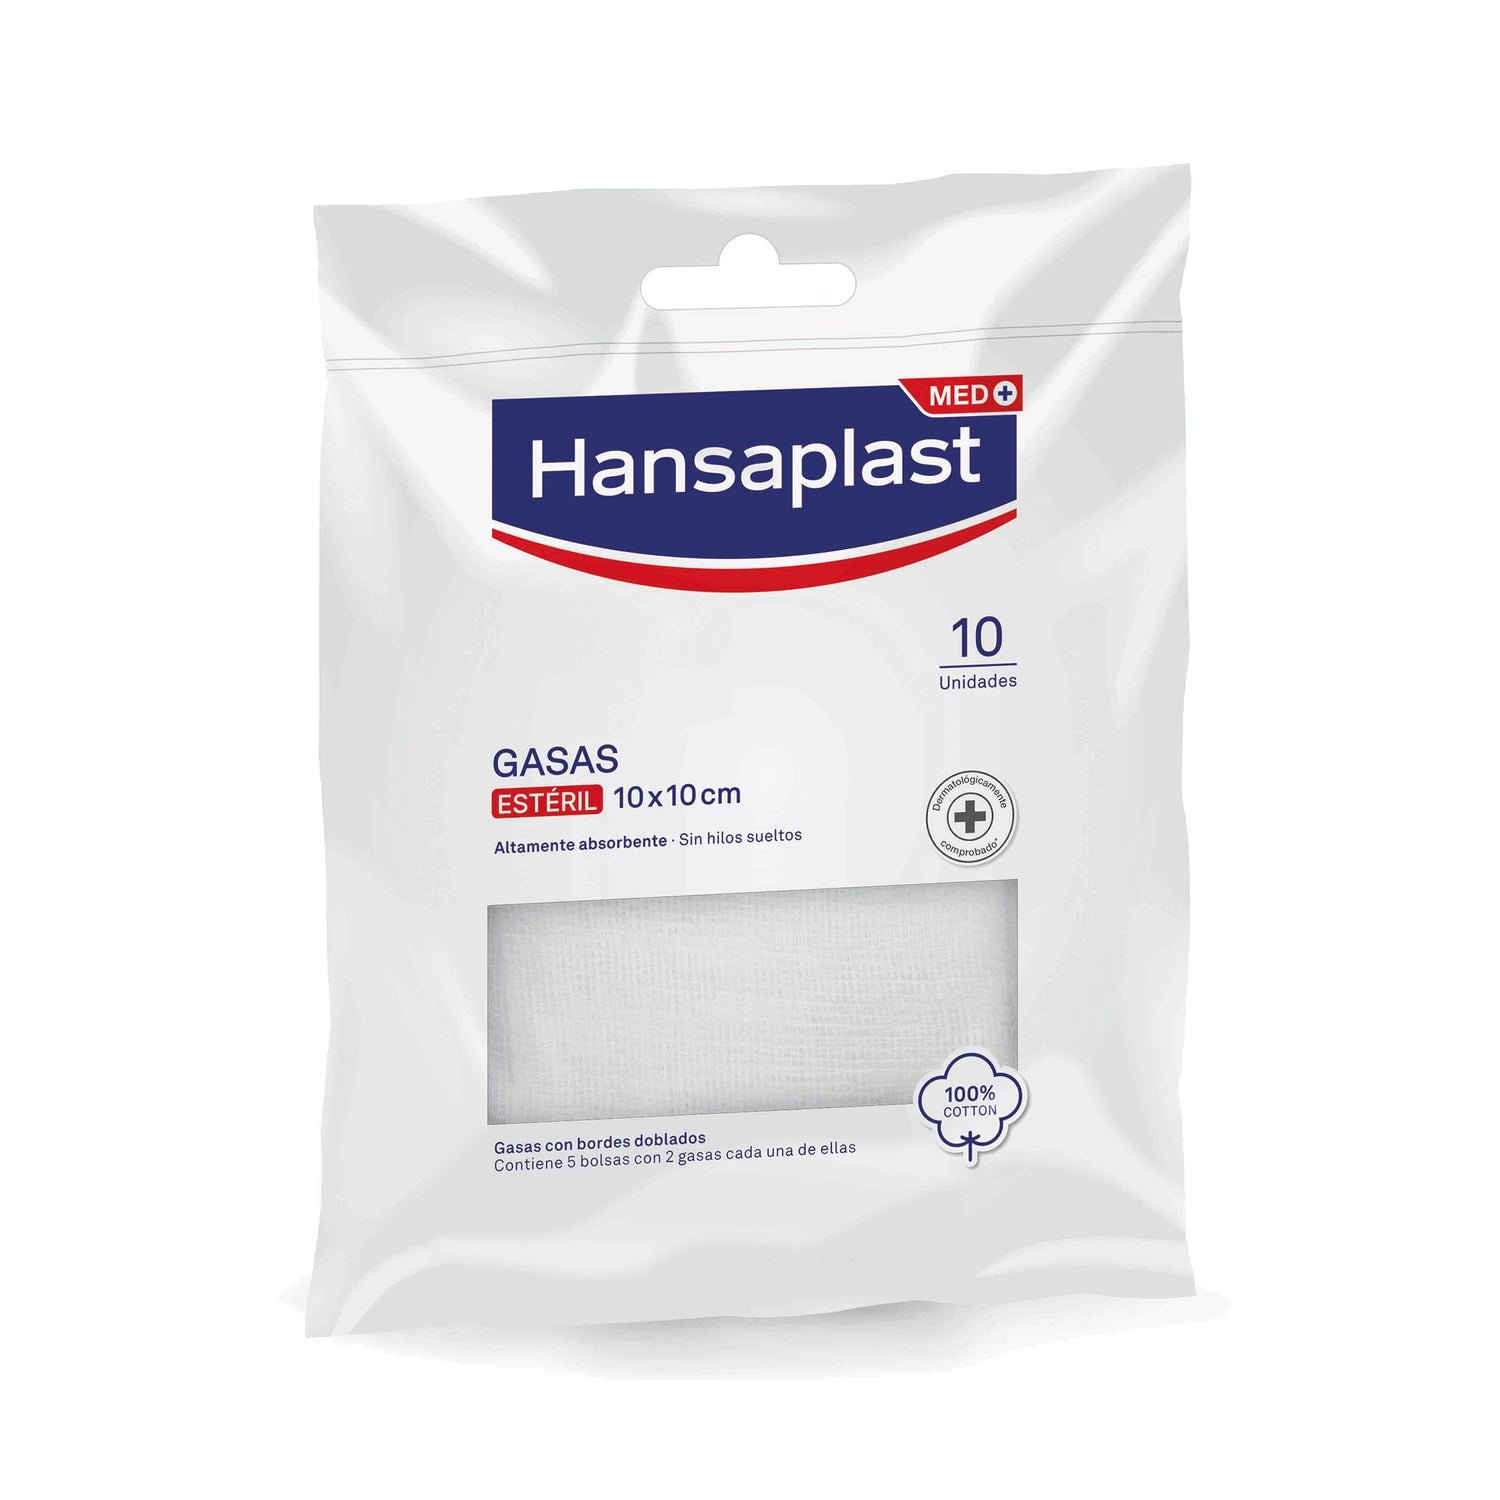 Hansaplast Med+ Gasas Estériles Suaves 10x10cm 10uds